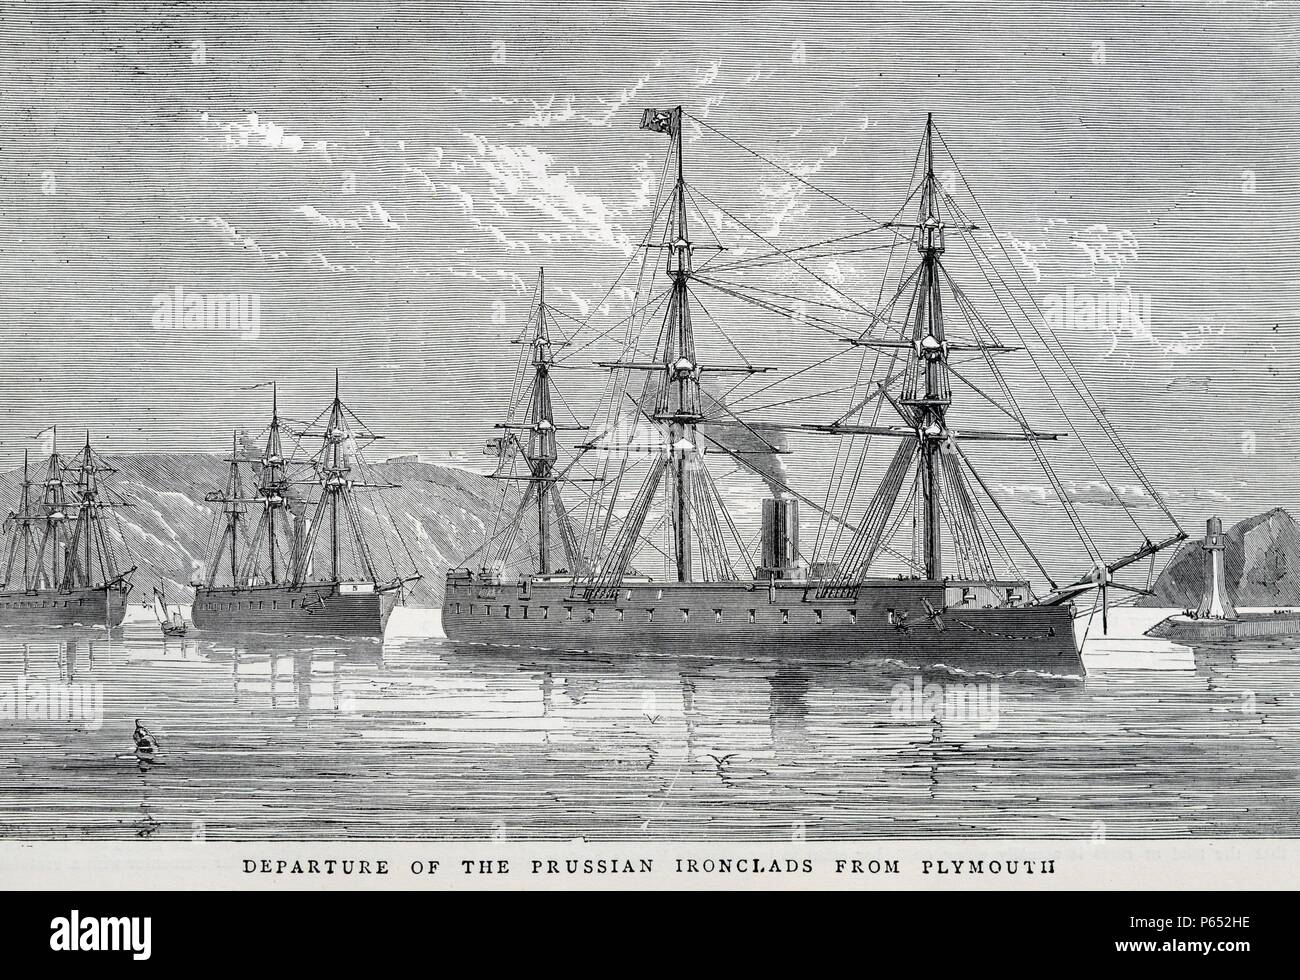 Gravure représente le départ des cuirassés prussien de Plymouth. Un cuirassé est un navire à propulsion à vapeur au début de la seconde moitié du xixe siècle. Datée 1870 Banque D'Images